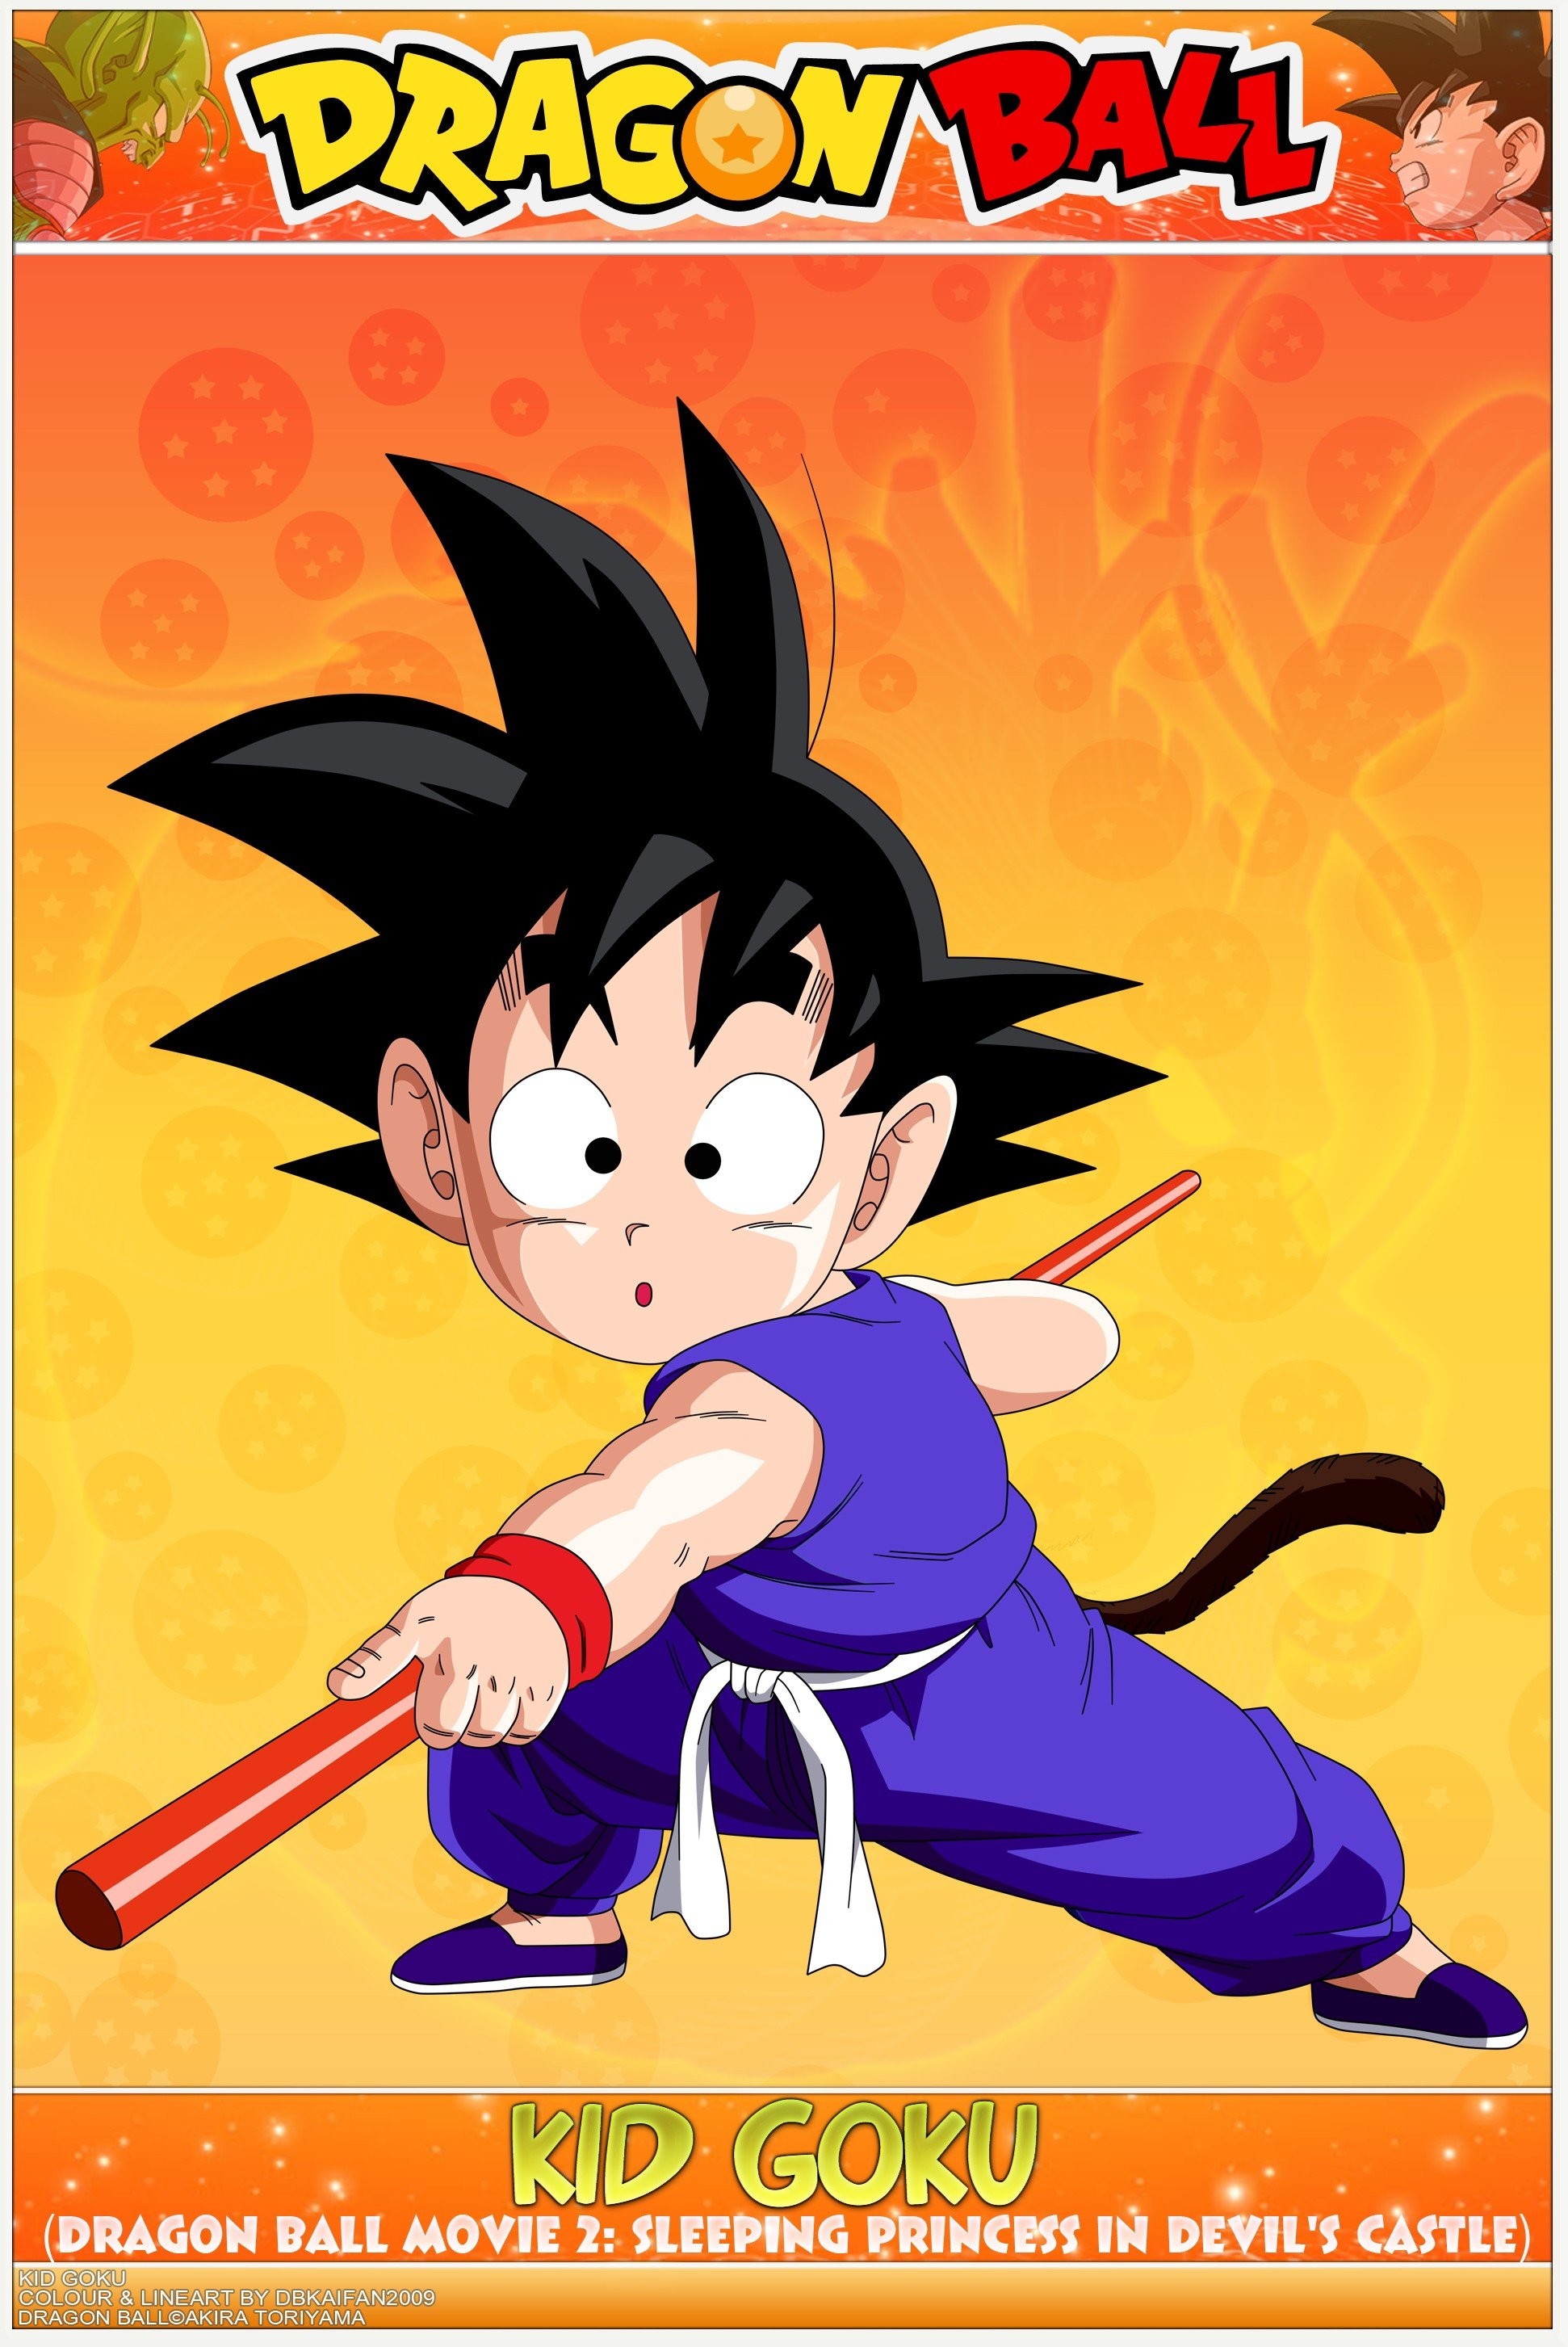 Kid Goku Wallpaper Wallpaper Data Src Ball Kid Goku